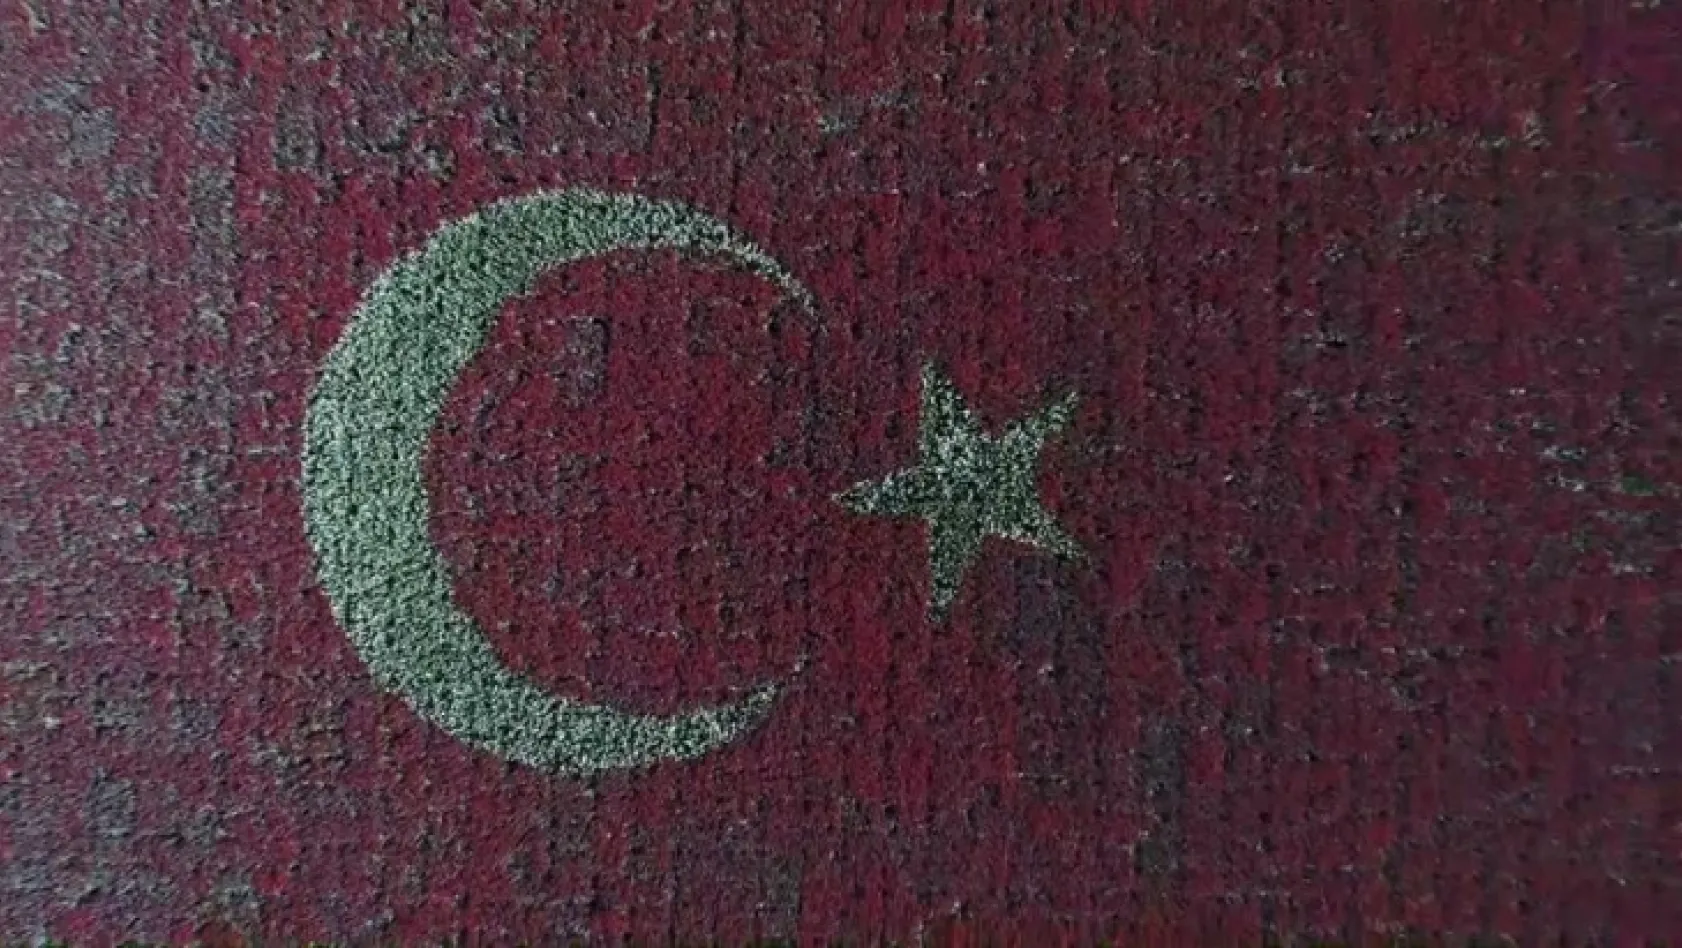 Türk Bayrağı temalı lale peyzajıyla dünya rekoru